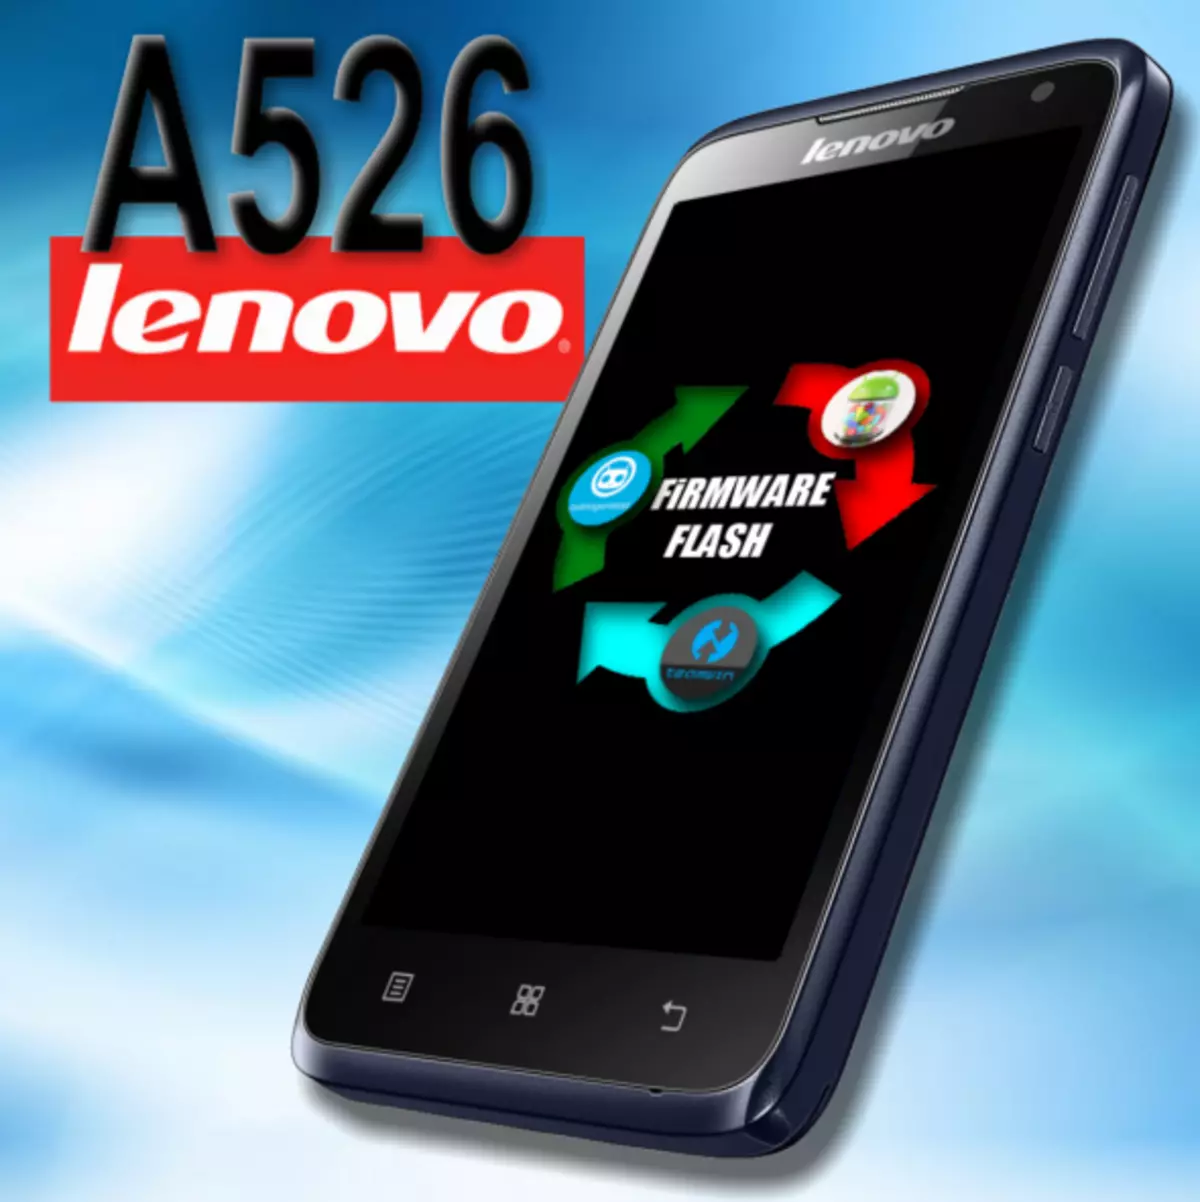 Lenovo A526 Firmware